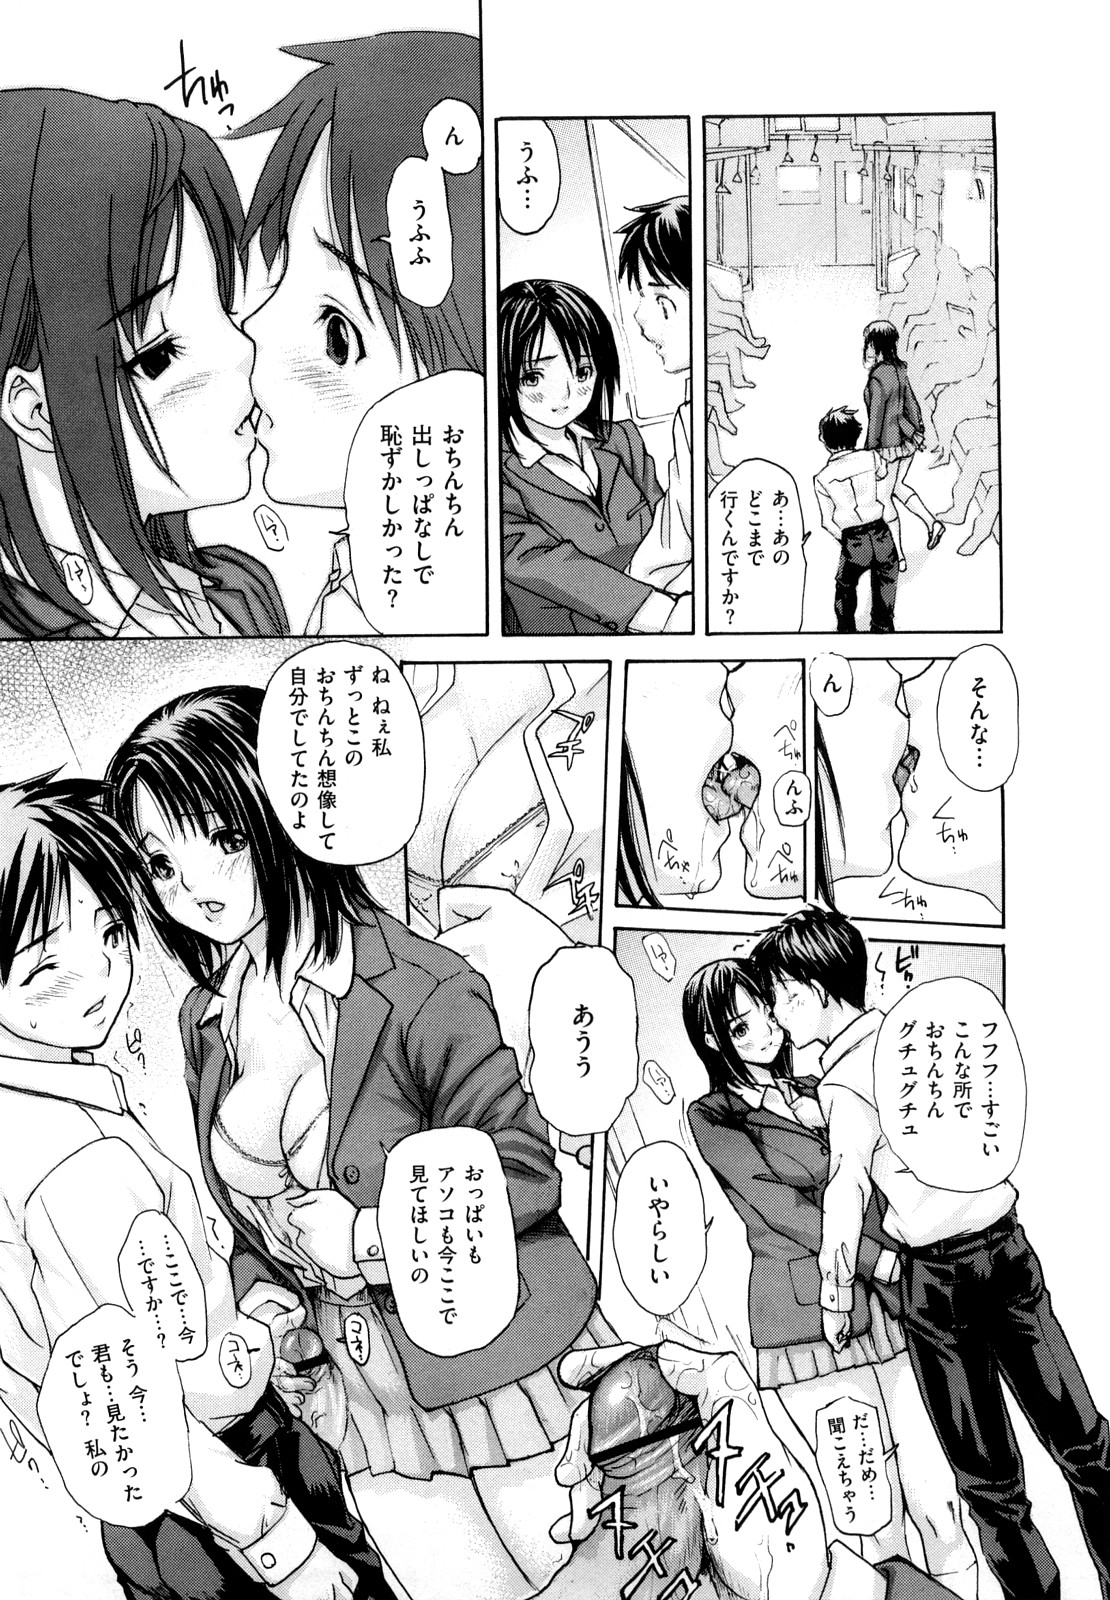 [MG Joe] Hanamaru Bitch page 14 full